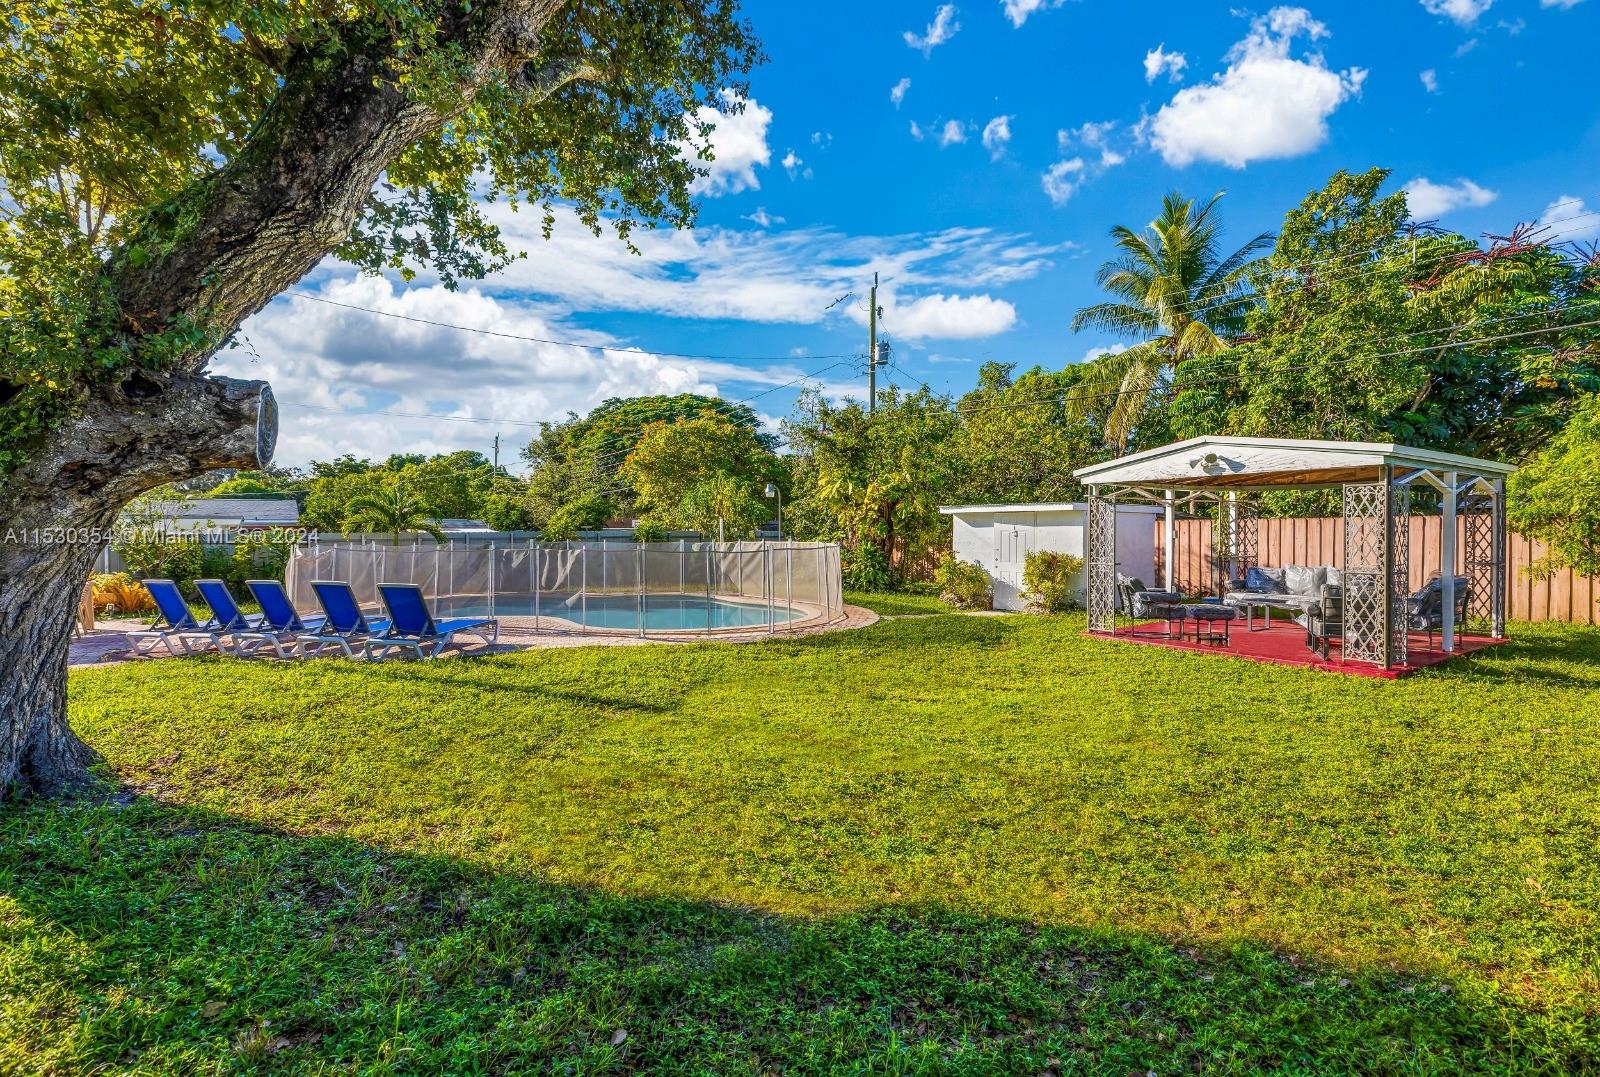 38 Miami Gardens Rd, West Park, Broward County, Florida - 4 Bedrooms  
2 Bathrooms - 